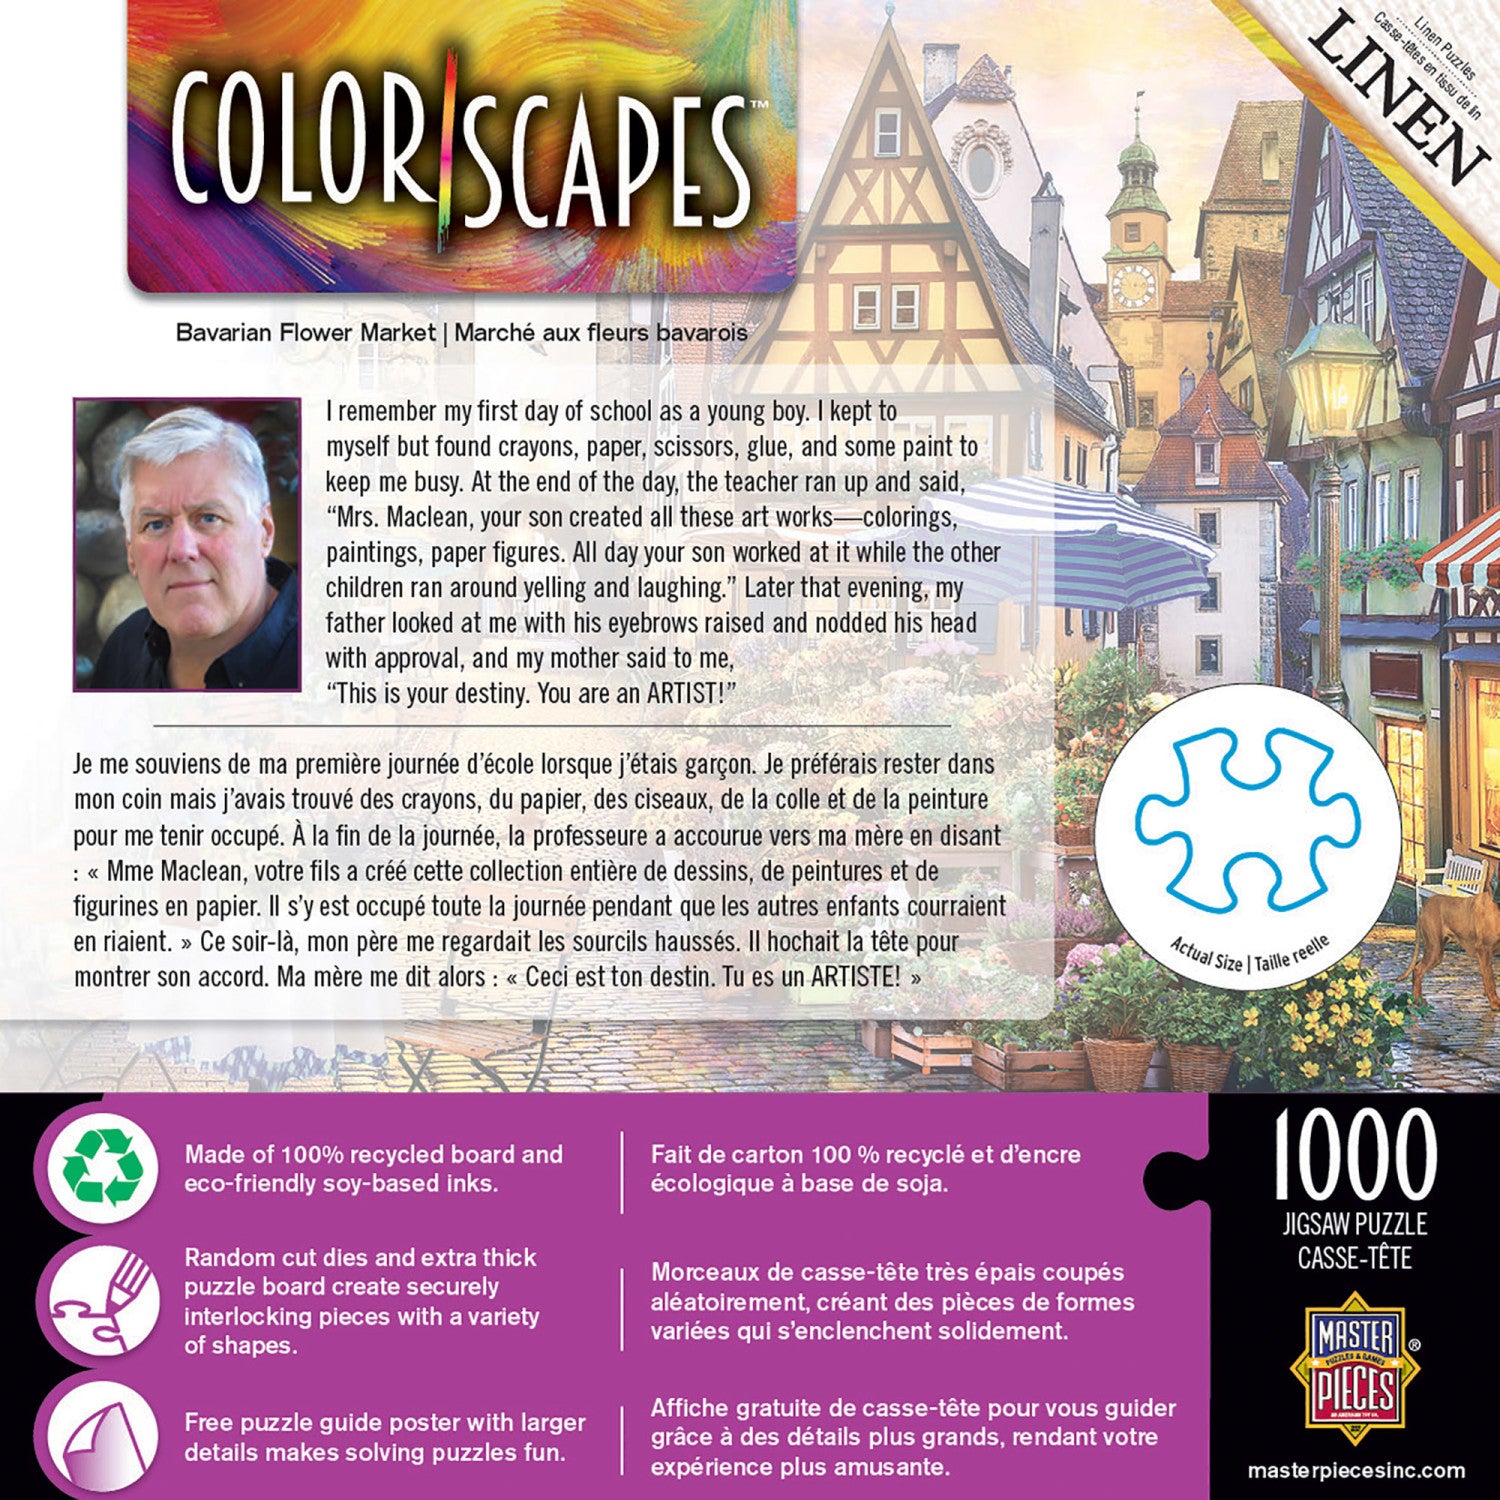 Colorscapes - Bavarian Flower Market 1000 Piece Puzzle